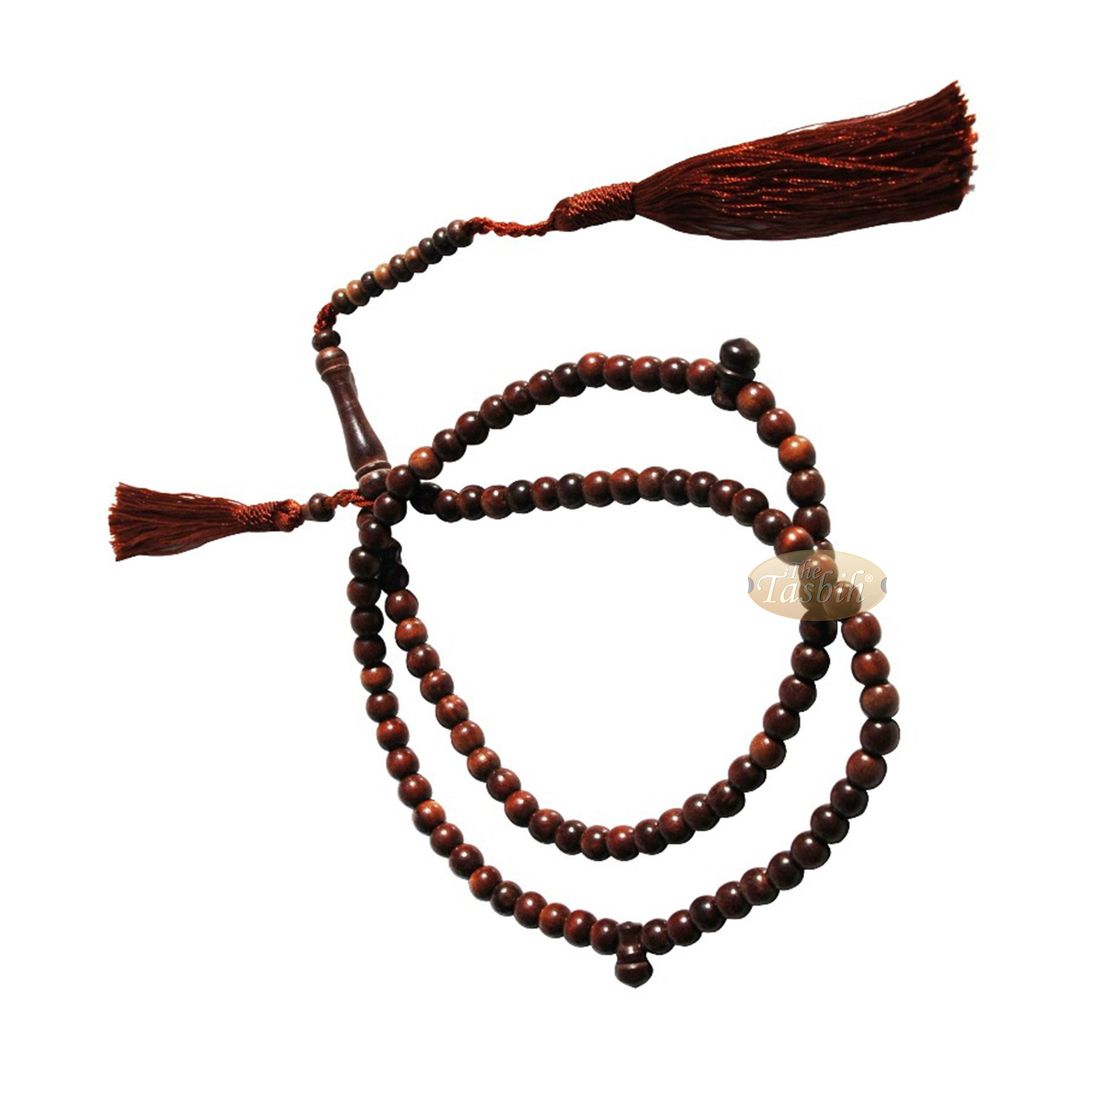 Small Exotic Ironwood 6mm Prayer Beads Tasbih Matching Tassels 99ct